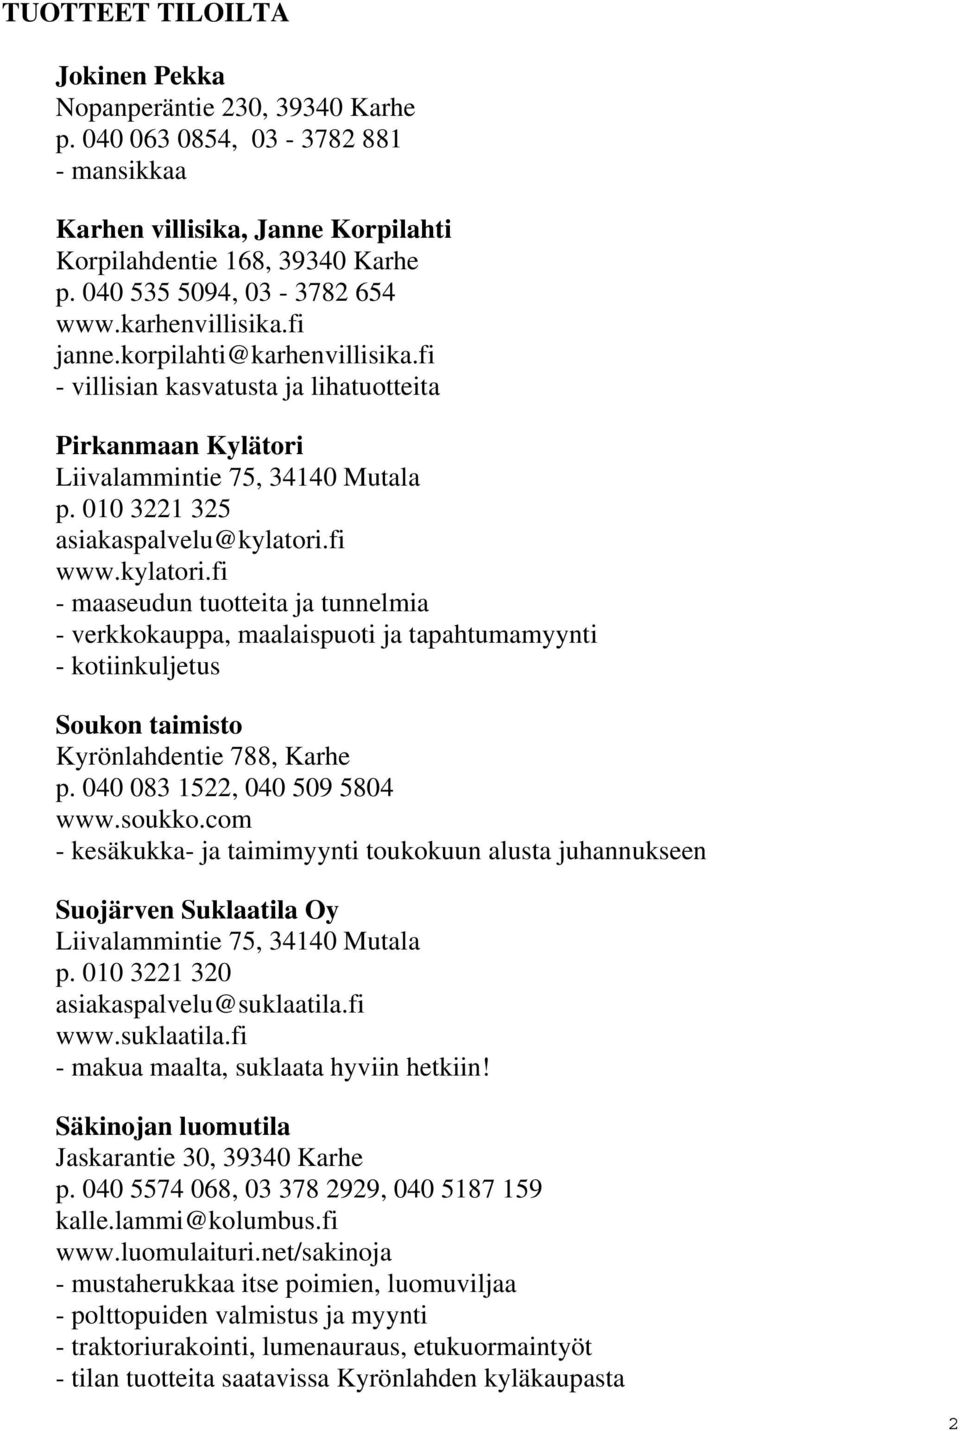 010 3221 325 asiakaspalvelu@kylatori.fi www.kylatori.fi - maaseudun tuotteita ja tunnelmia - verkkokauppa, maalaispuoti ja tapahtumamyynti - kotiinkuljetus Soukon taimisto Kyrönlahdentie 788, Karhe p.